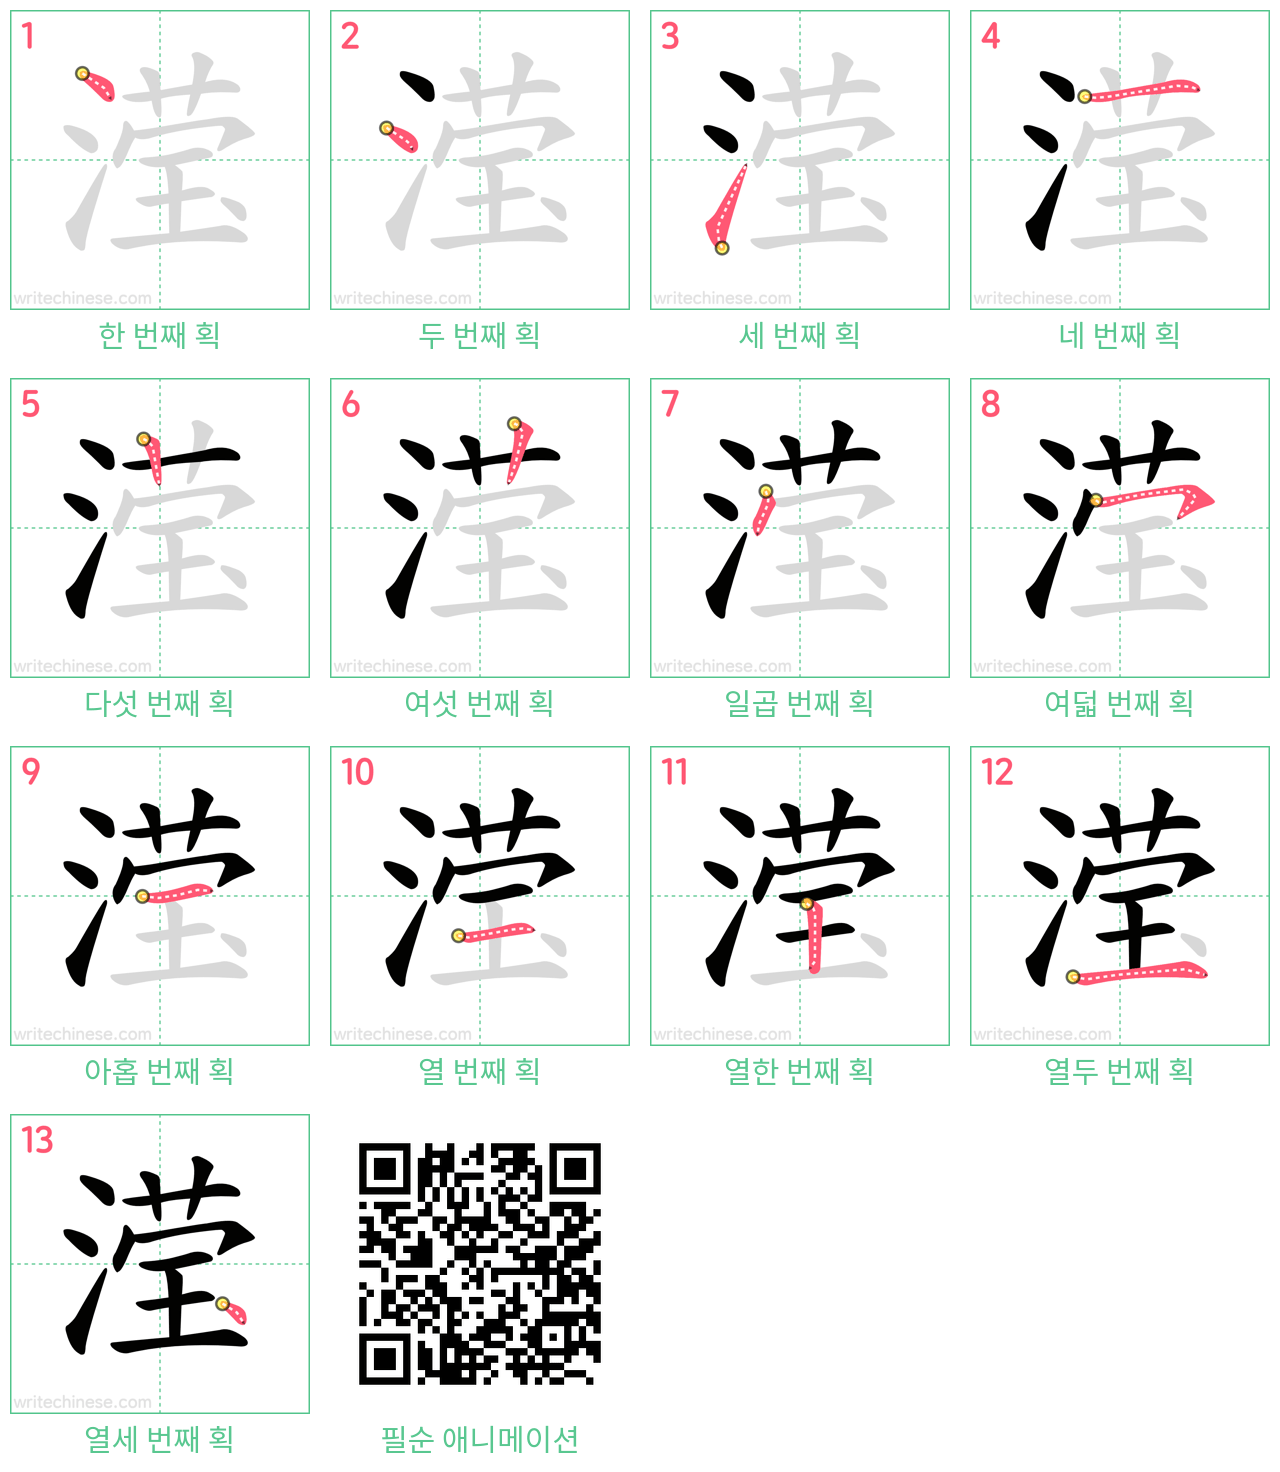 滢 step-by-step stroke order diagrams